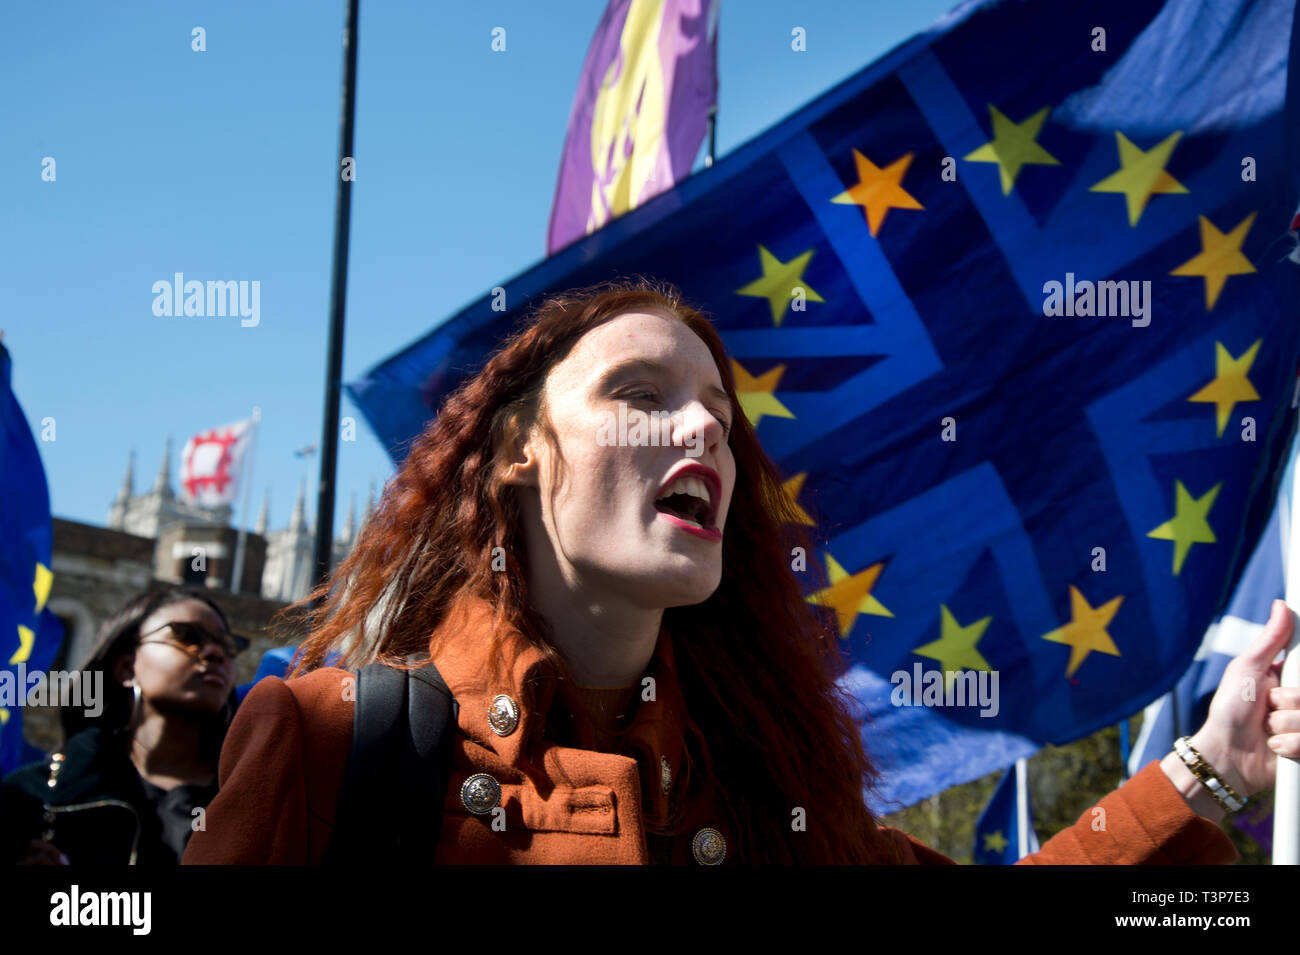 10 avril 2019 Westminster. Jeune femme rester contestataire devant les Maisons du Parlement avec drapeau européen Banque D'Images